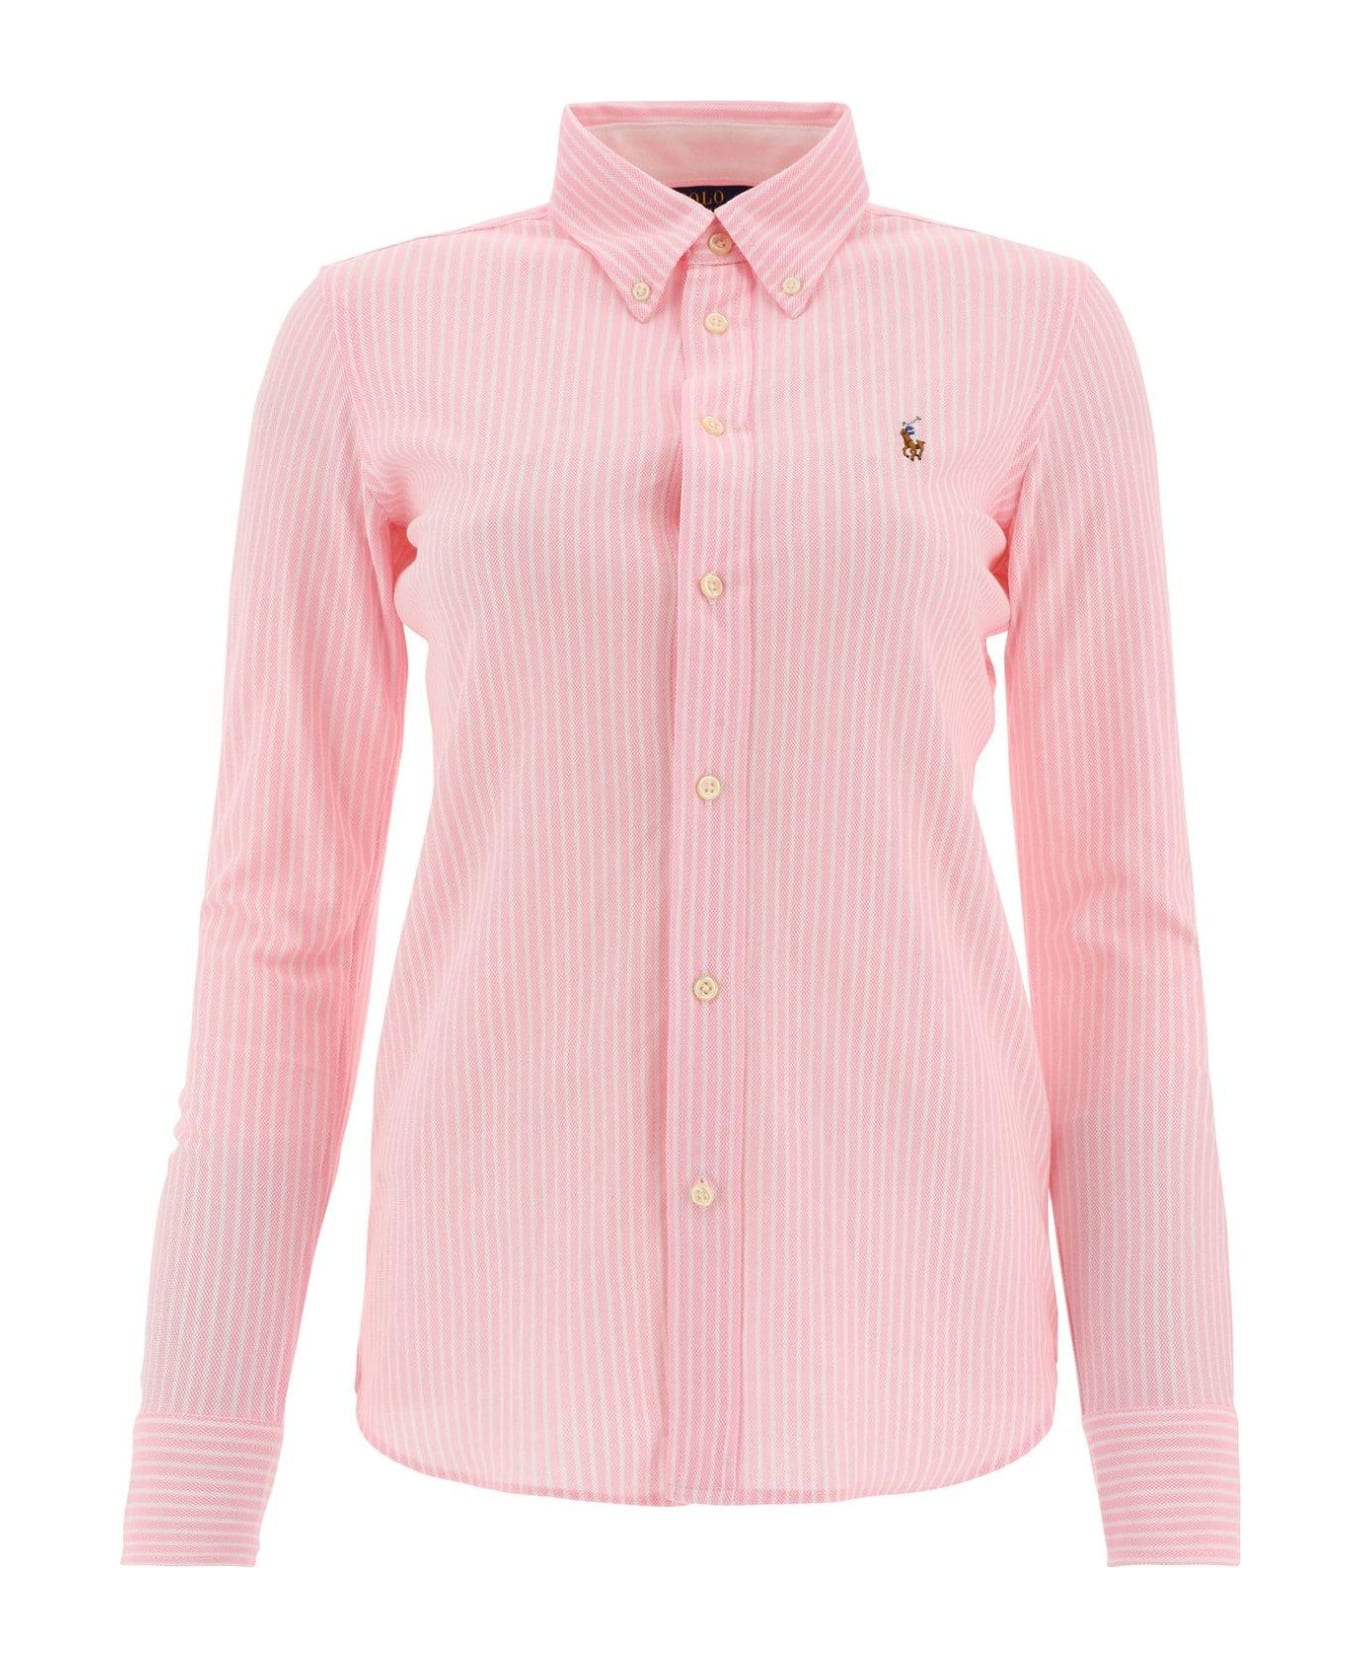 Ralph Lauren Striped Long-sleeved Shirt - Carmel Pink White シャツ